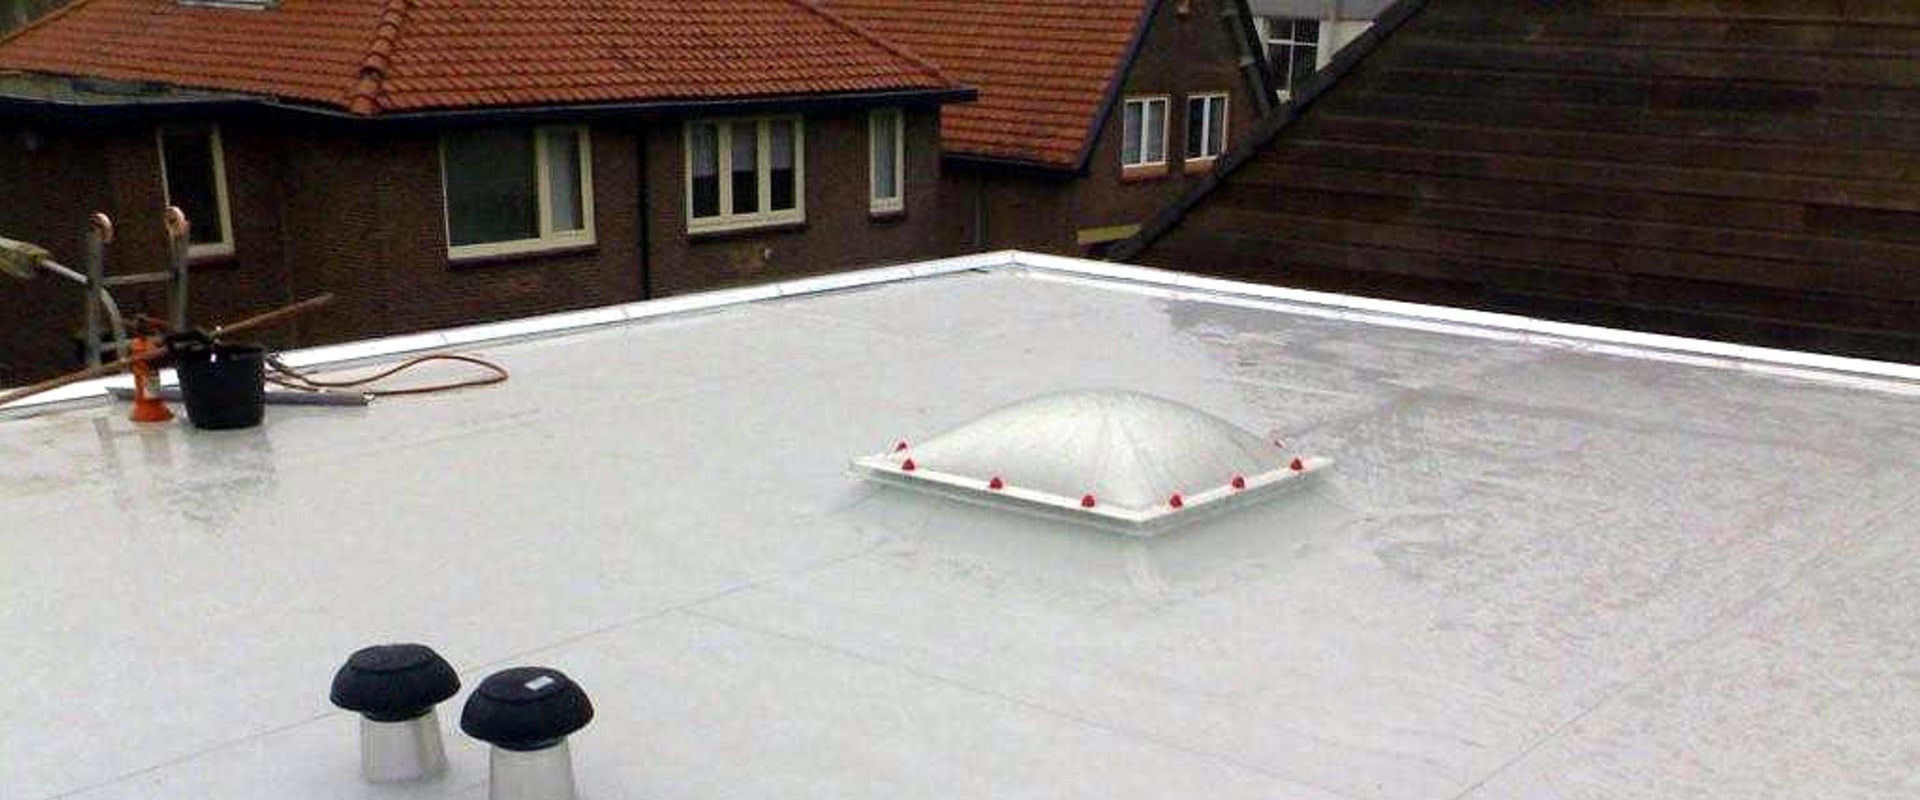 Hoe groot is de markt voor dakbedekkingen?